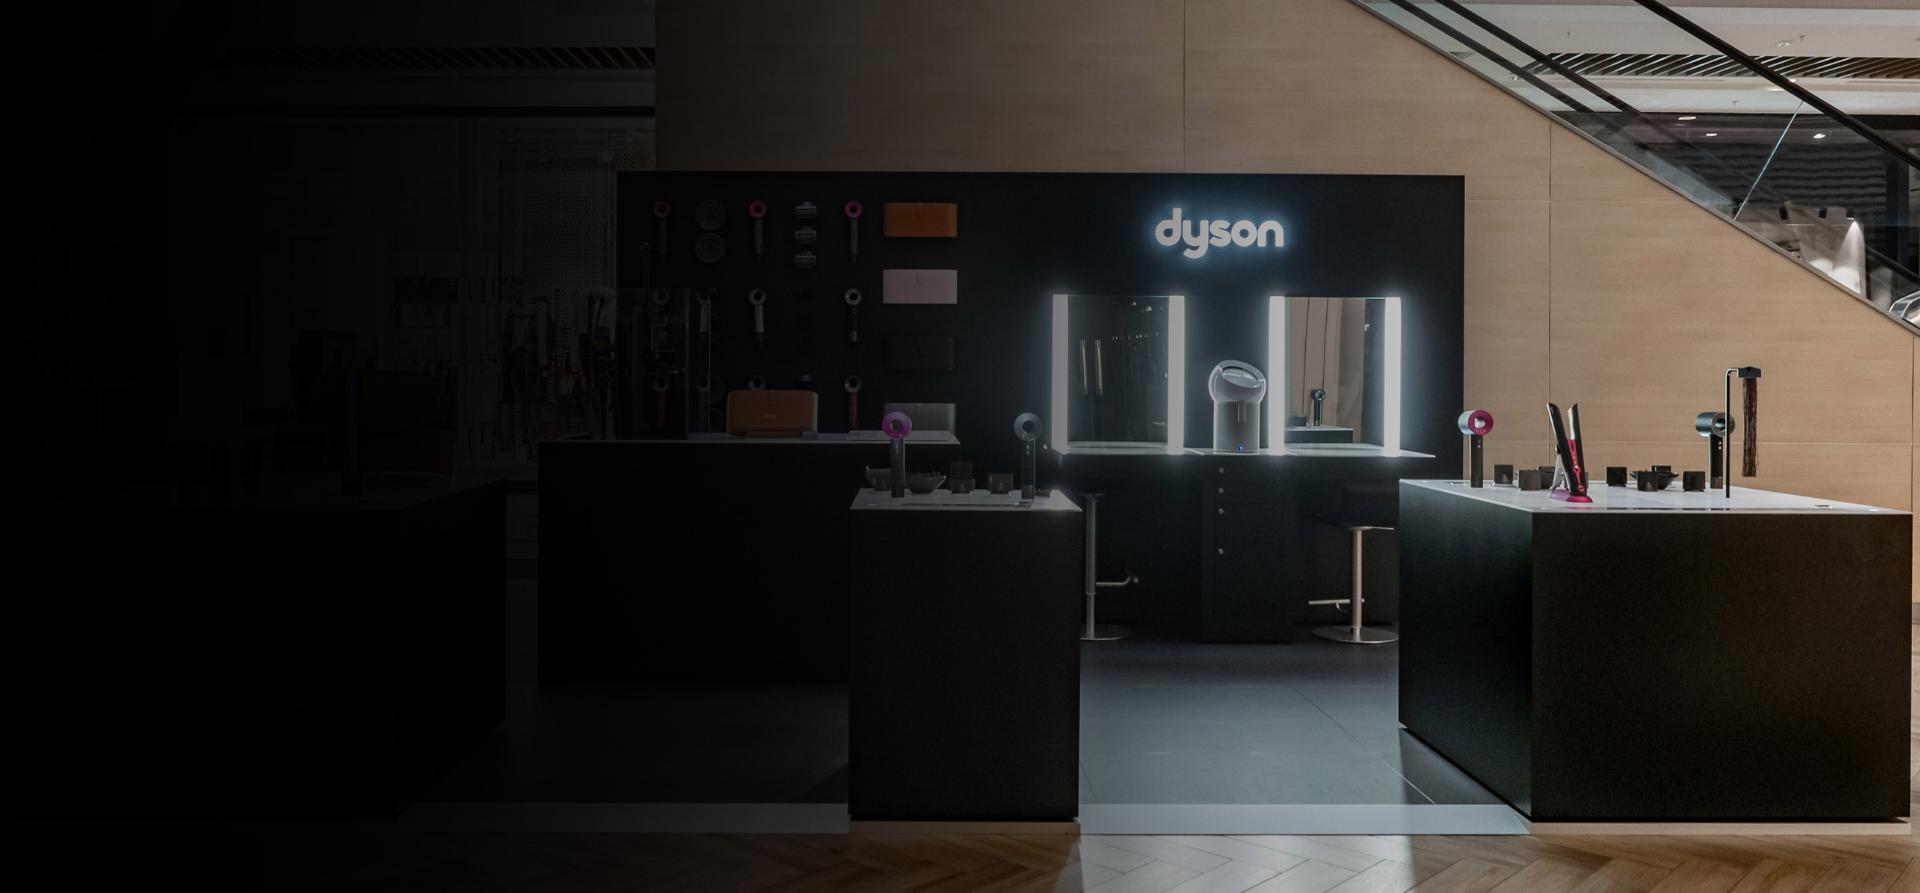 Kolekcja technologii Dyson wystawiona w sklepie Dyson Demo